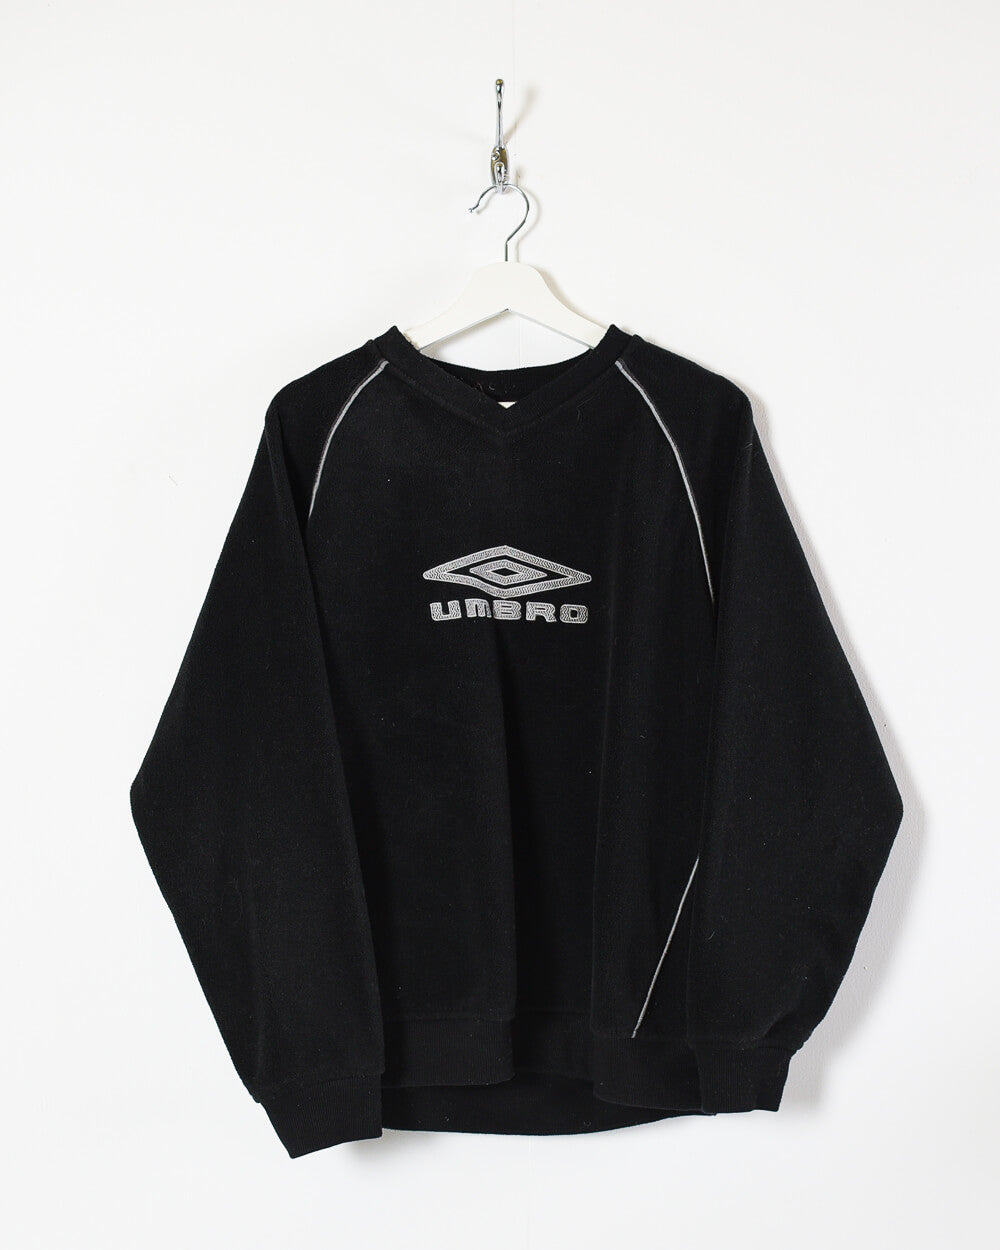 Black Umbro Pullover Fleece - Medium